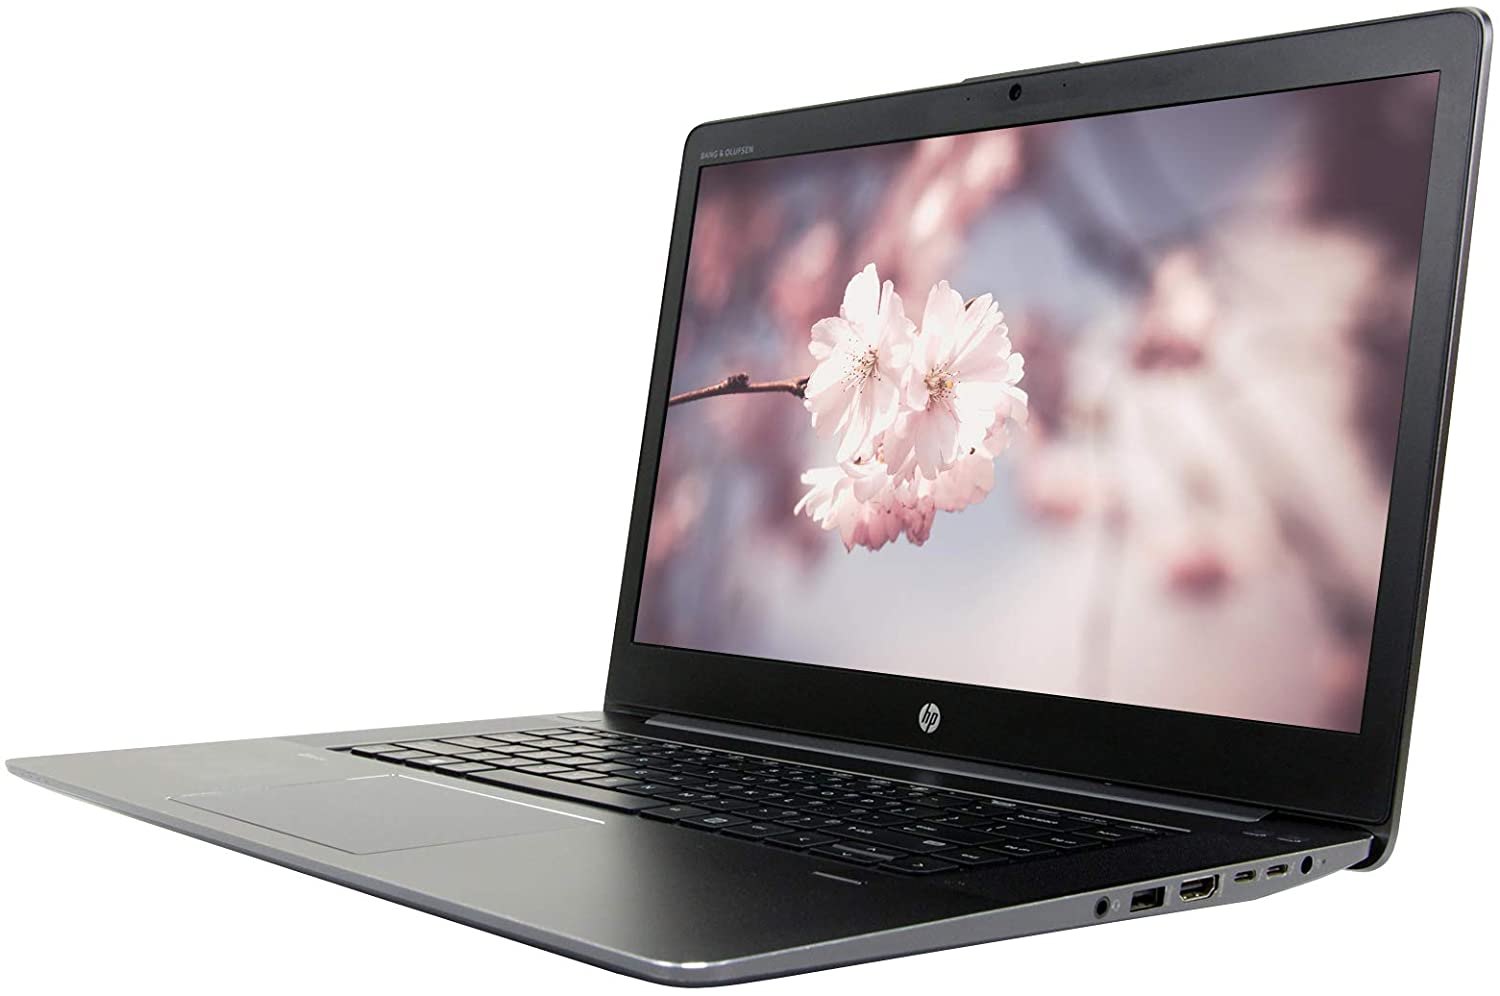 HP ZBook Studio G3 (i7 6700HQ, 8G, 256G, M1000M 4G,  FHD) | Laptop  Game